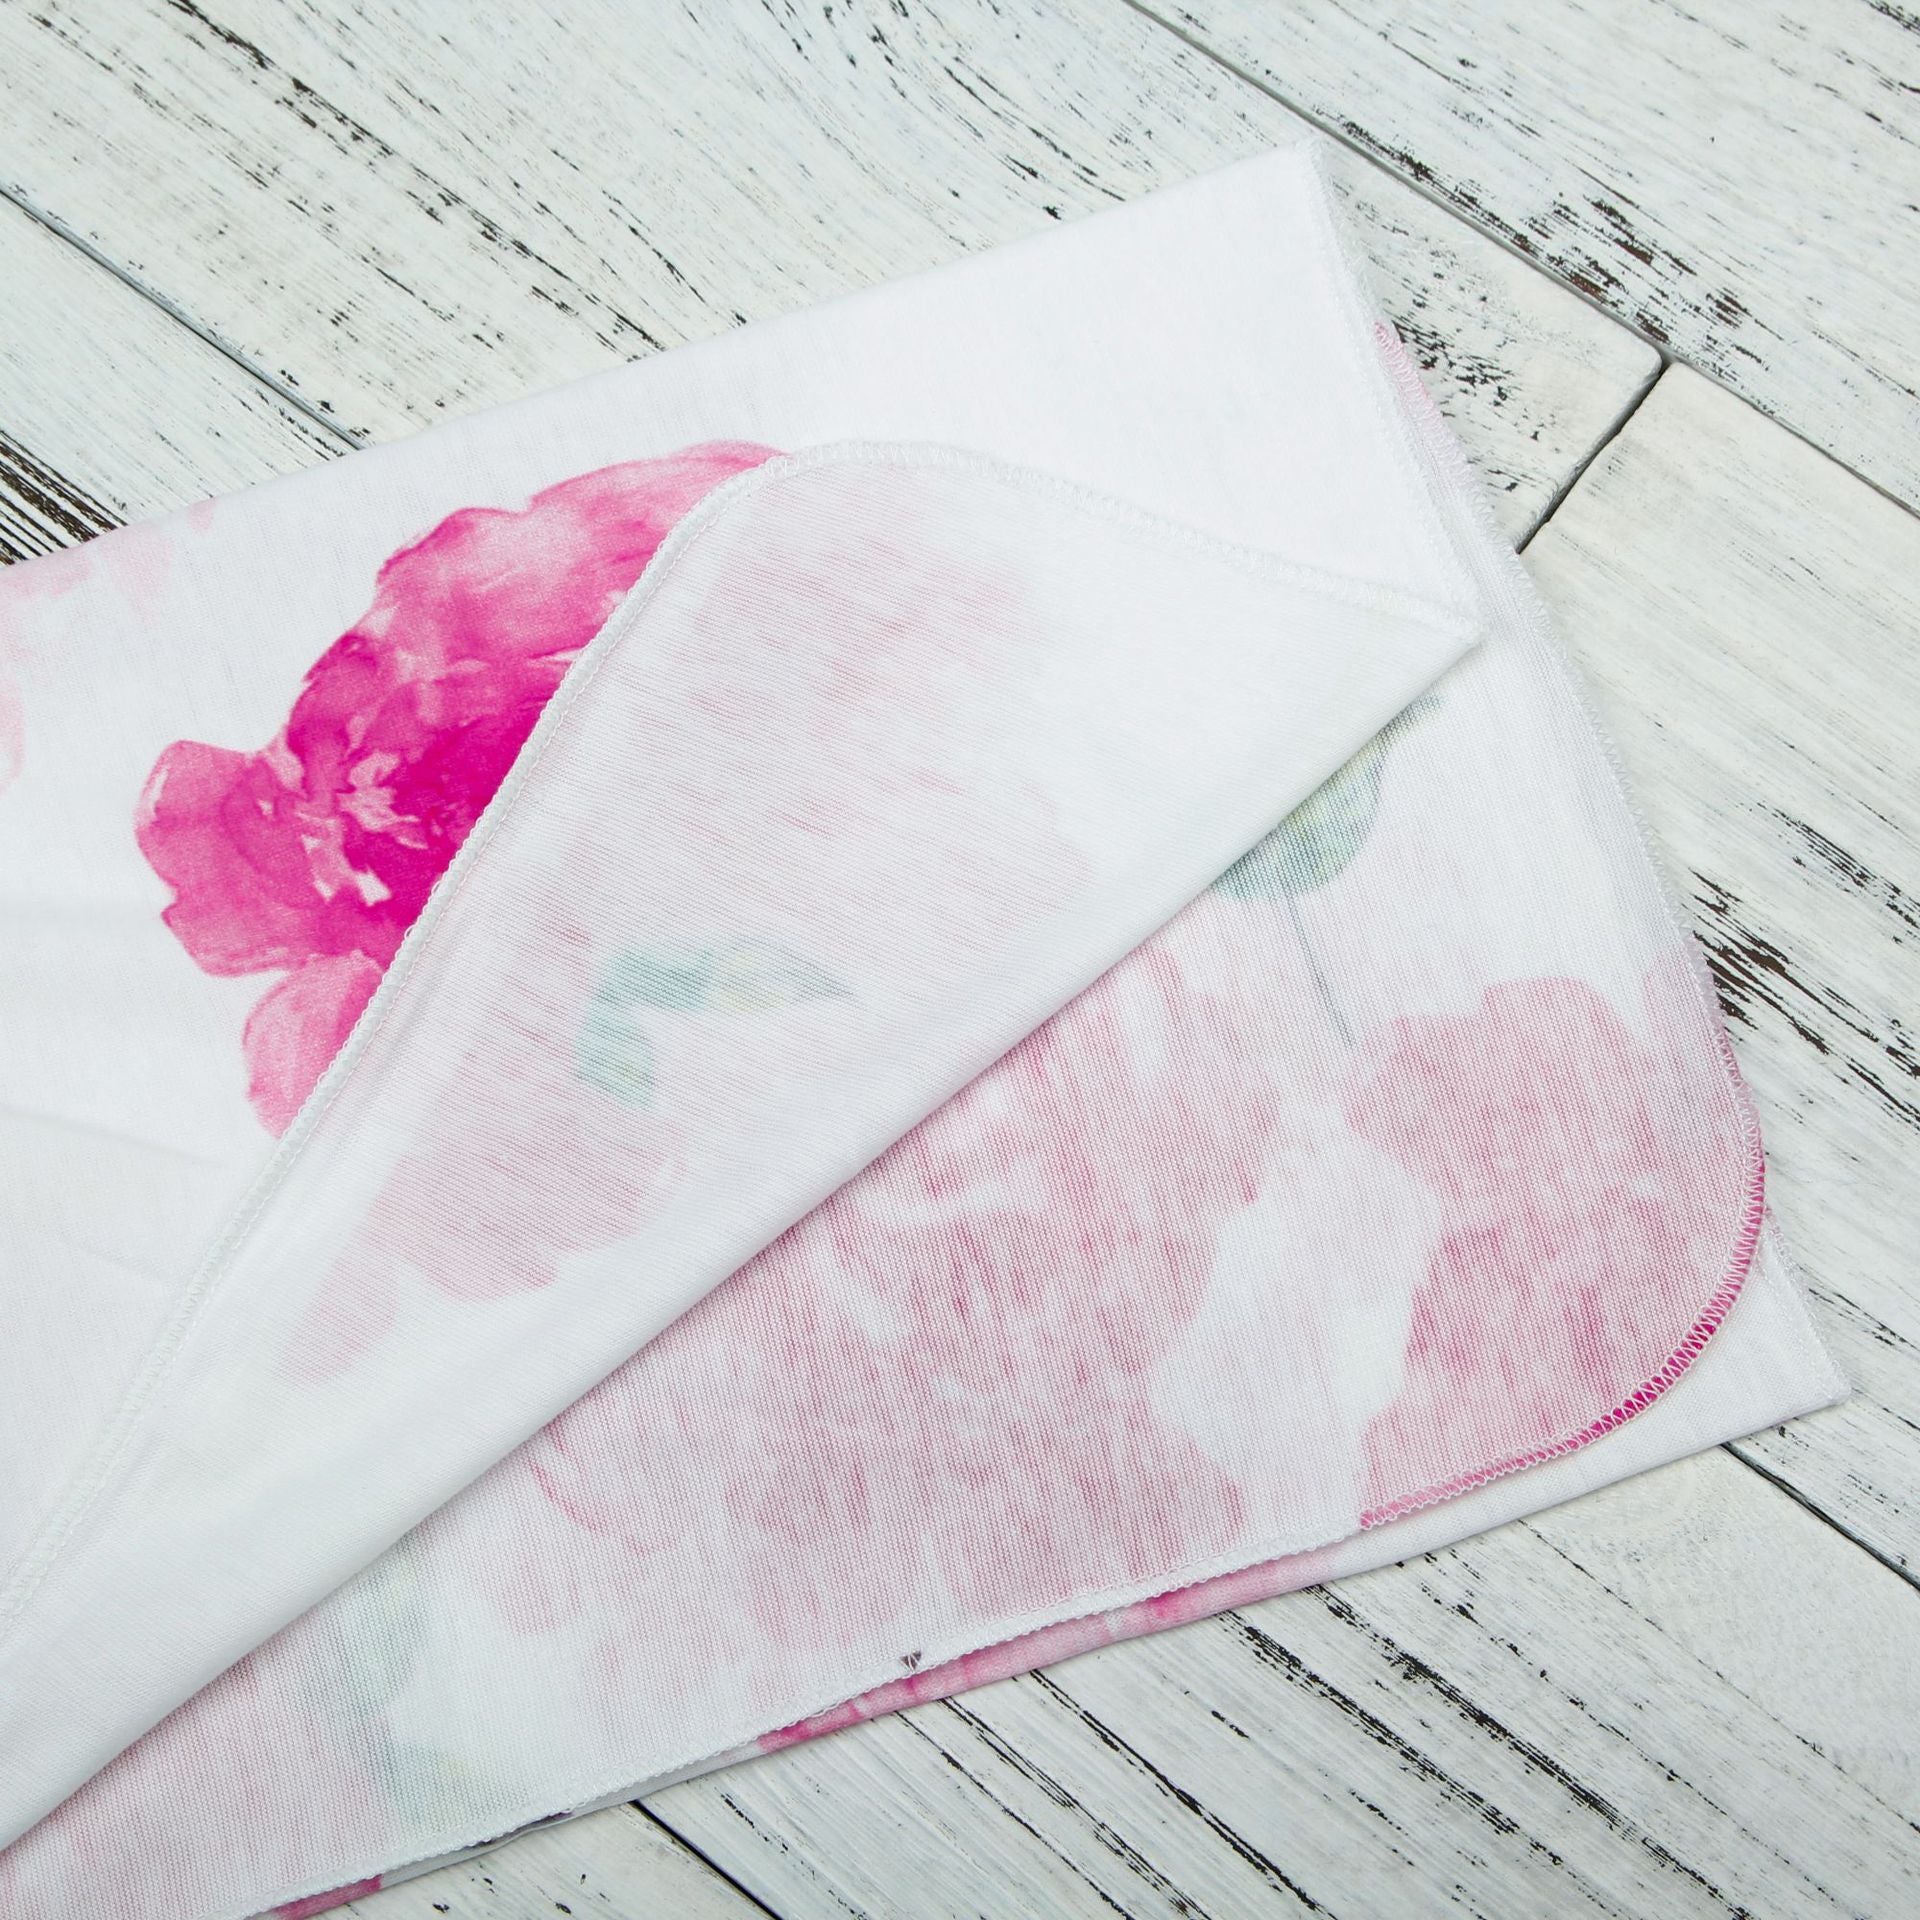 Conjunto de sombrero y saco de dormir con estampado de flores rosadas lindas para recién nacidos 